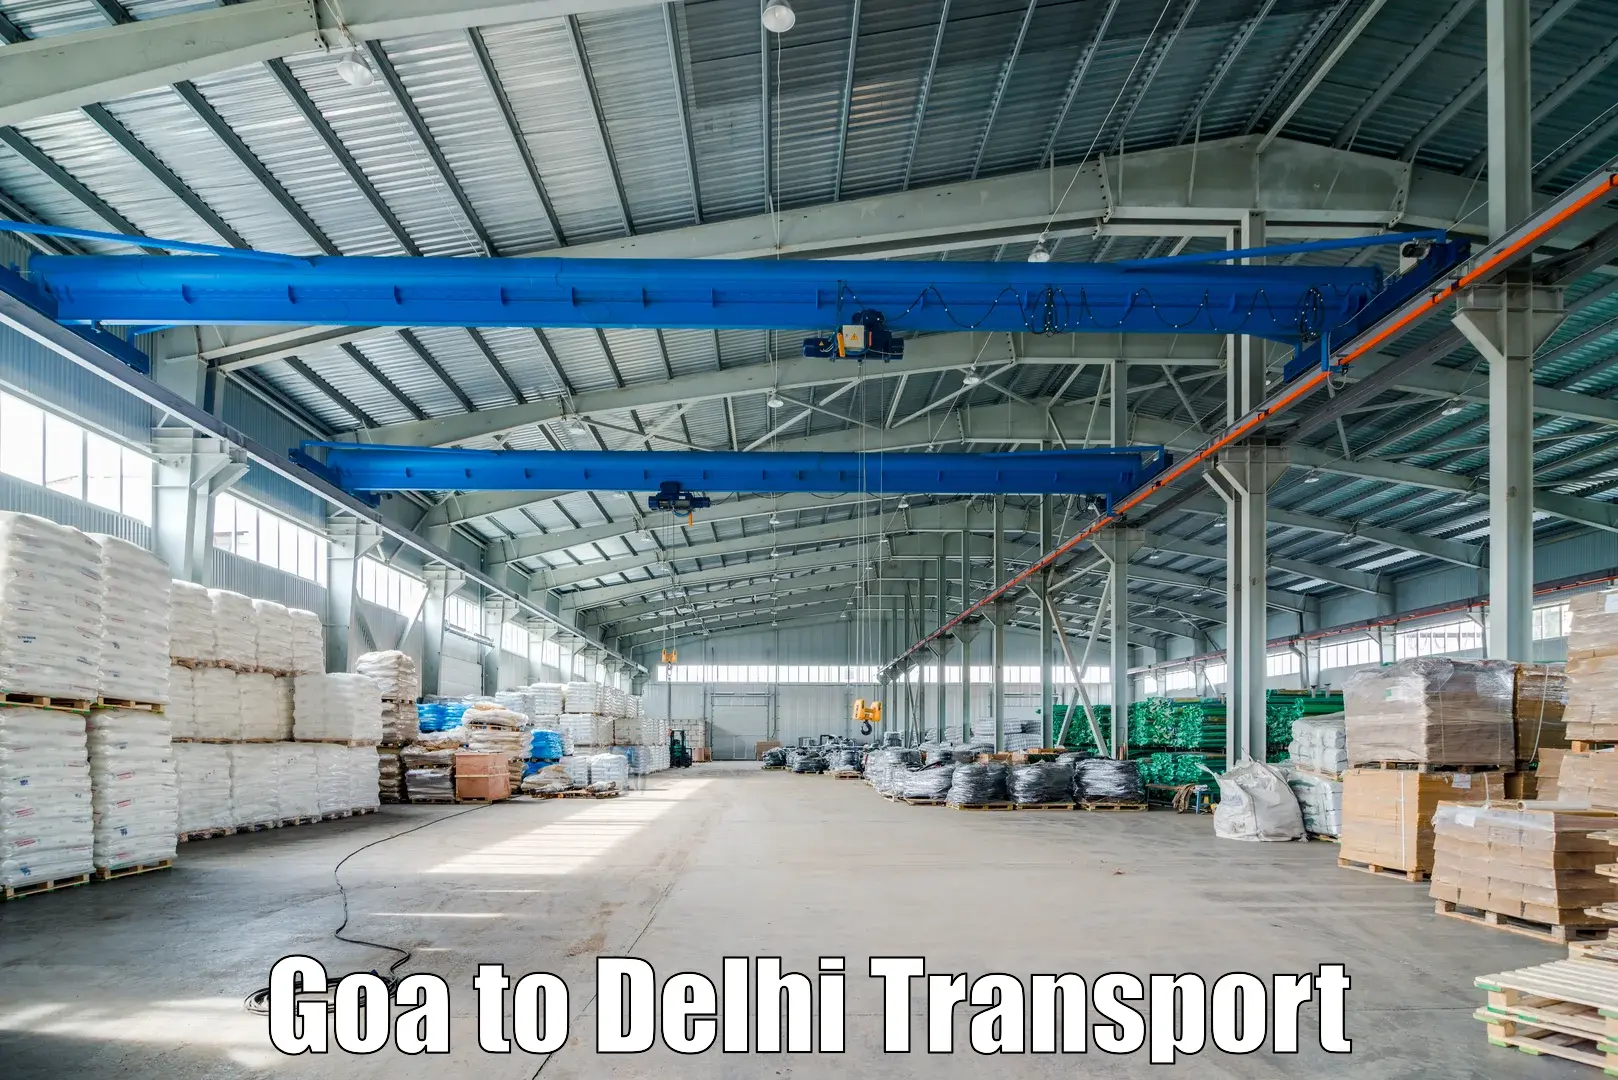 Nearby transport service Goa to Kalkaji